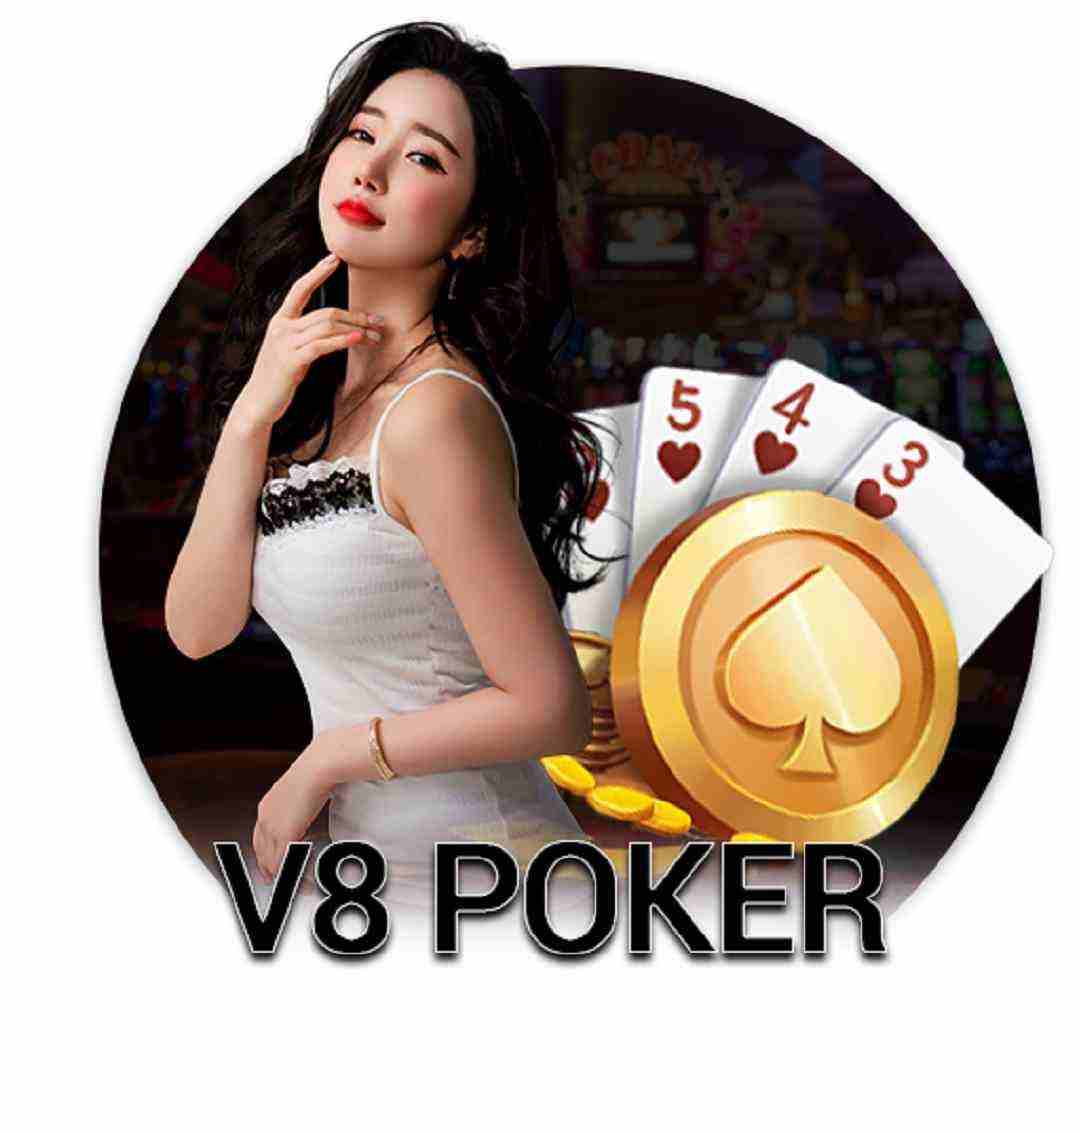 V8 Poker xây dựng hệ giao diện nổi bật hút hồn